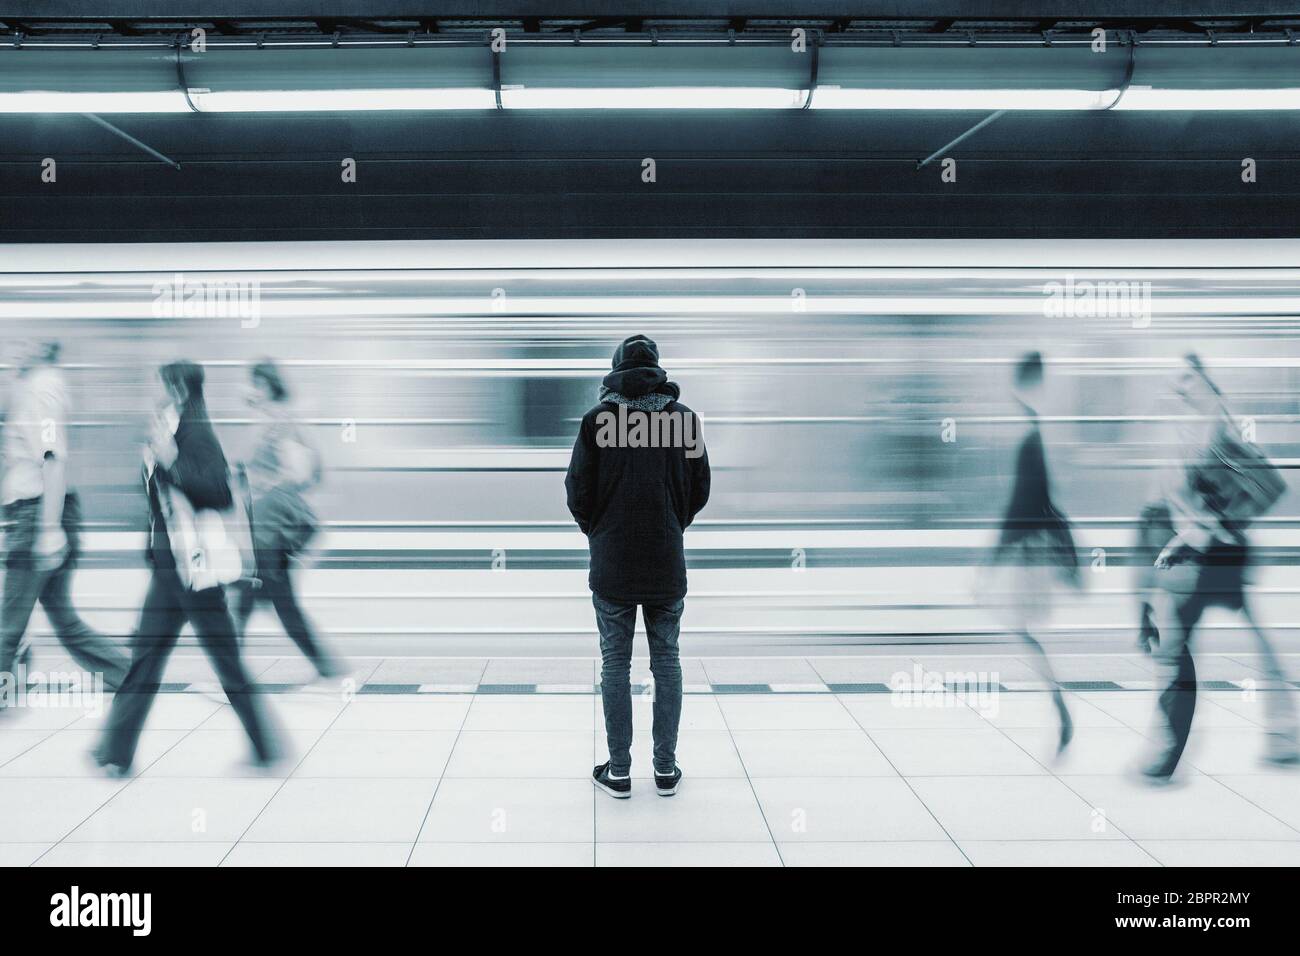 Lange Belichtung Bild mit einsamen Jungen Mann erschossen, von hinten an der U-Bahn station mit verschwommenen fahrenden Zug und nur wenige Leute im Hintergrund Stockfoto